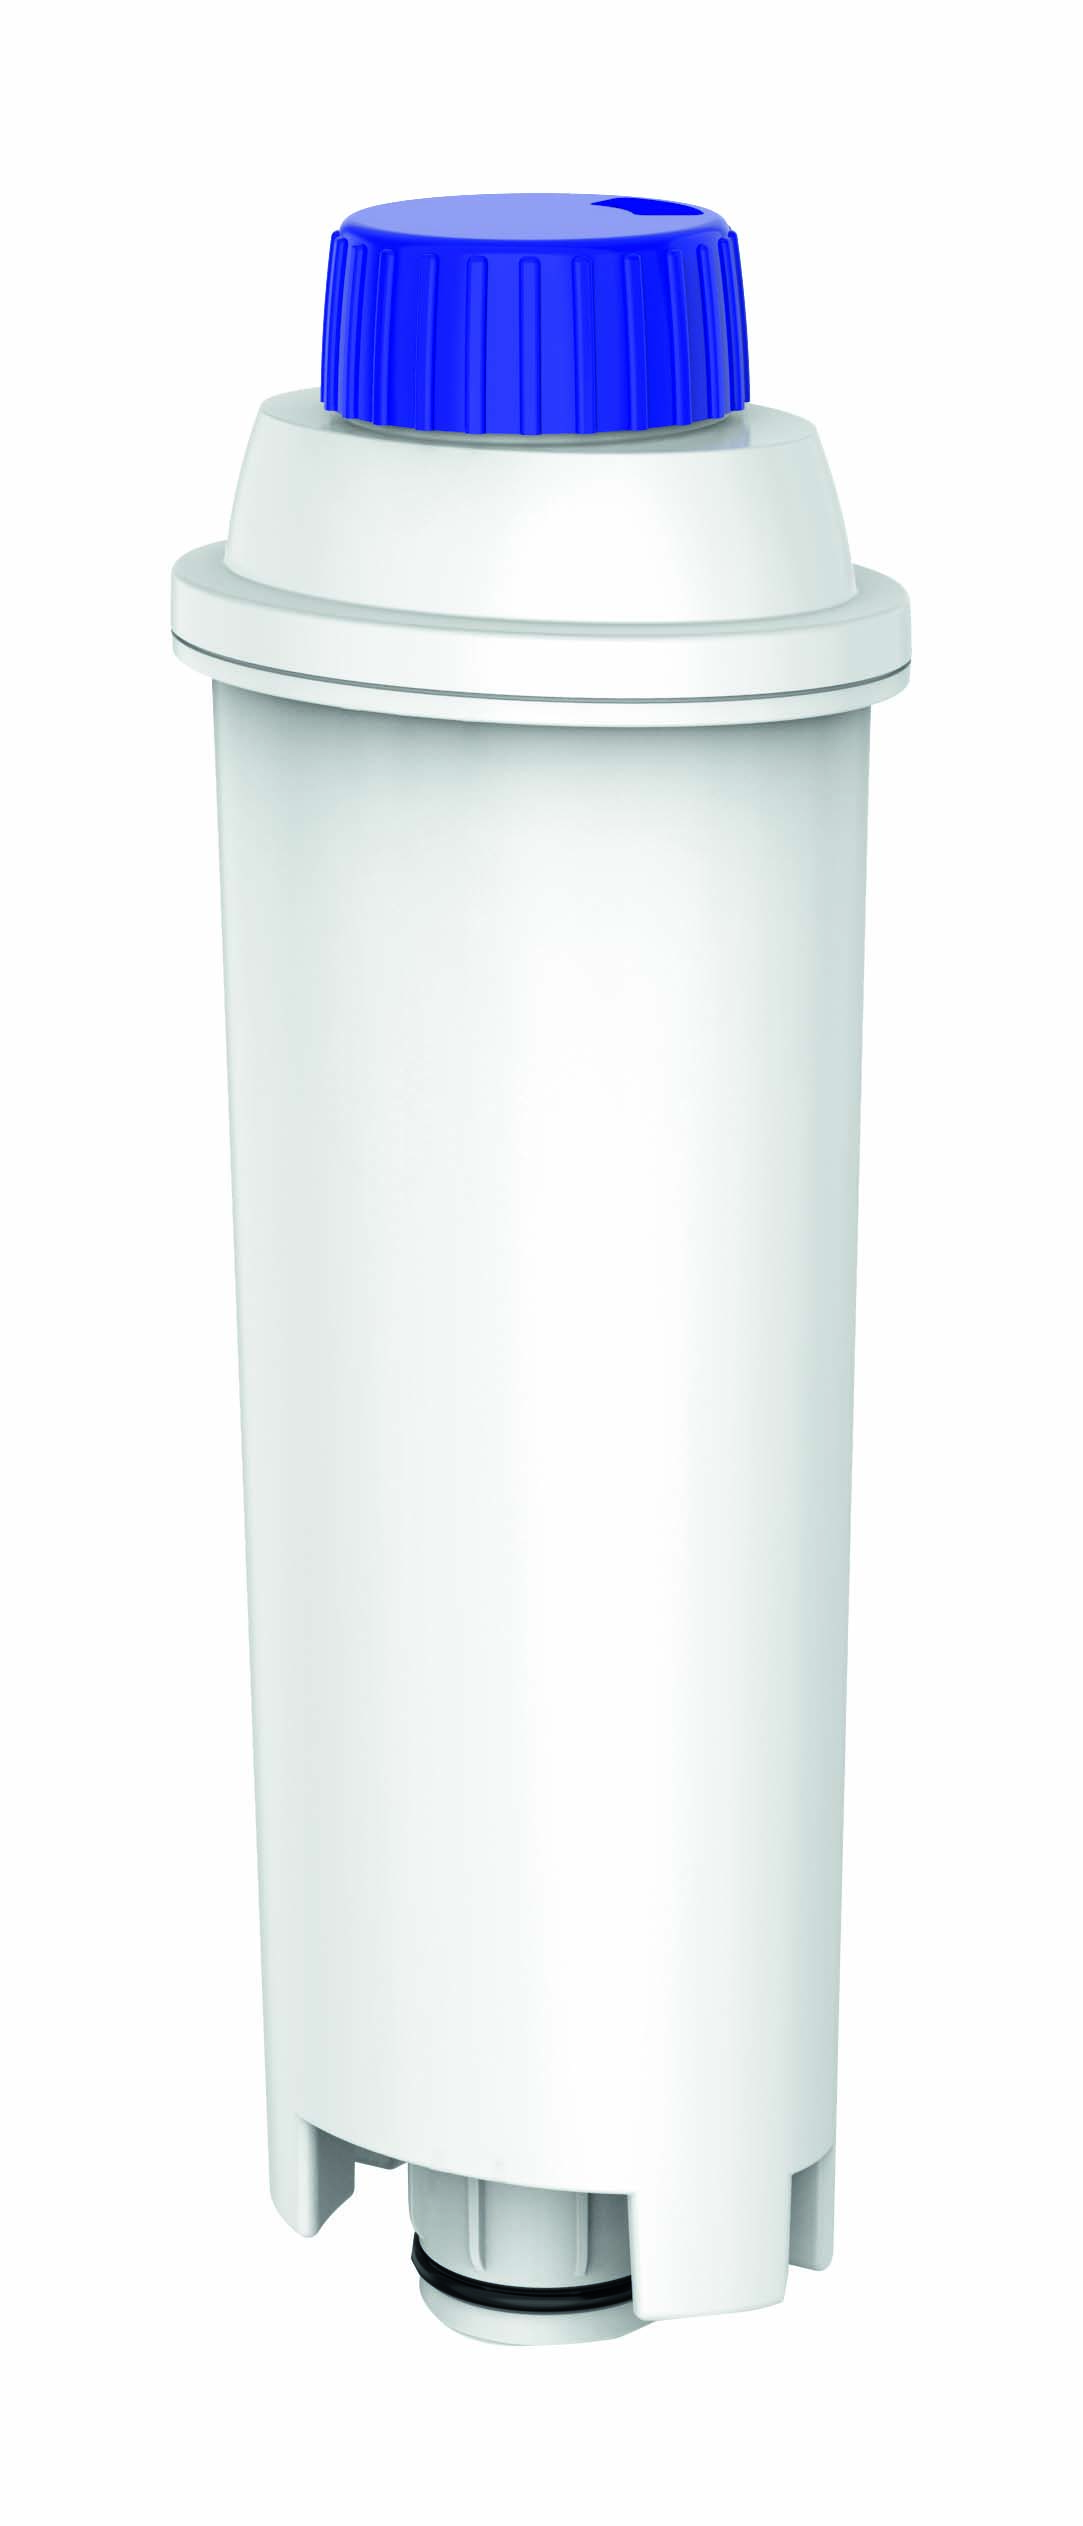 KOENIC KWF-003-D einsetzbar C002 Wasserfilter DELONGHI Weiß DLS statt